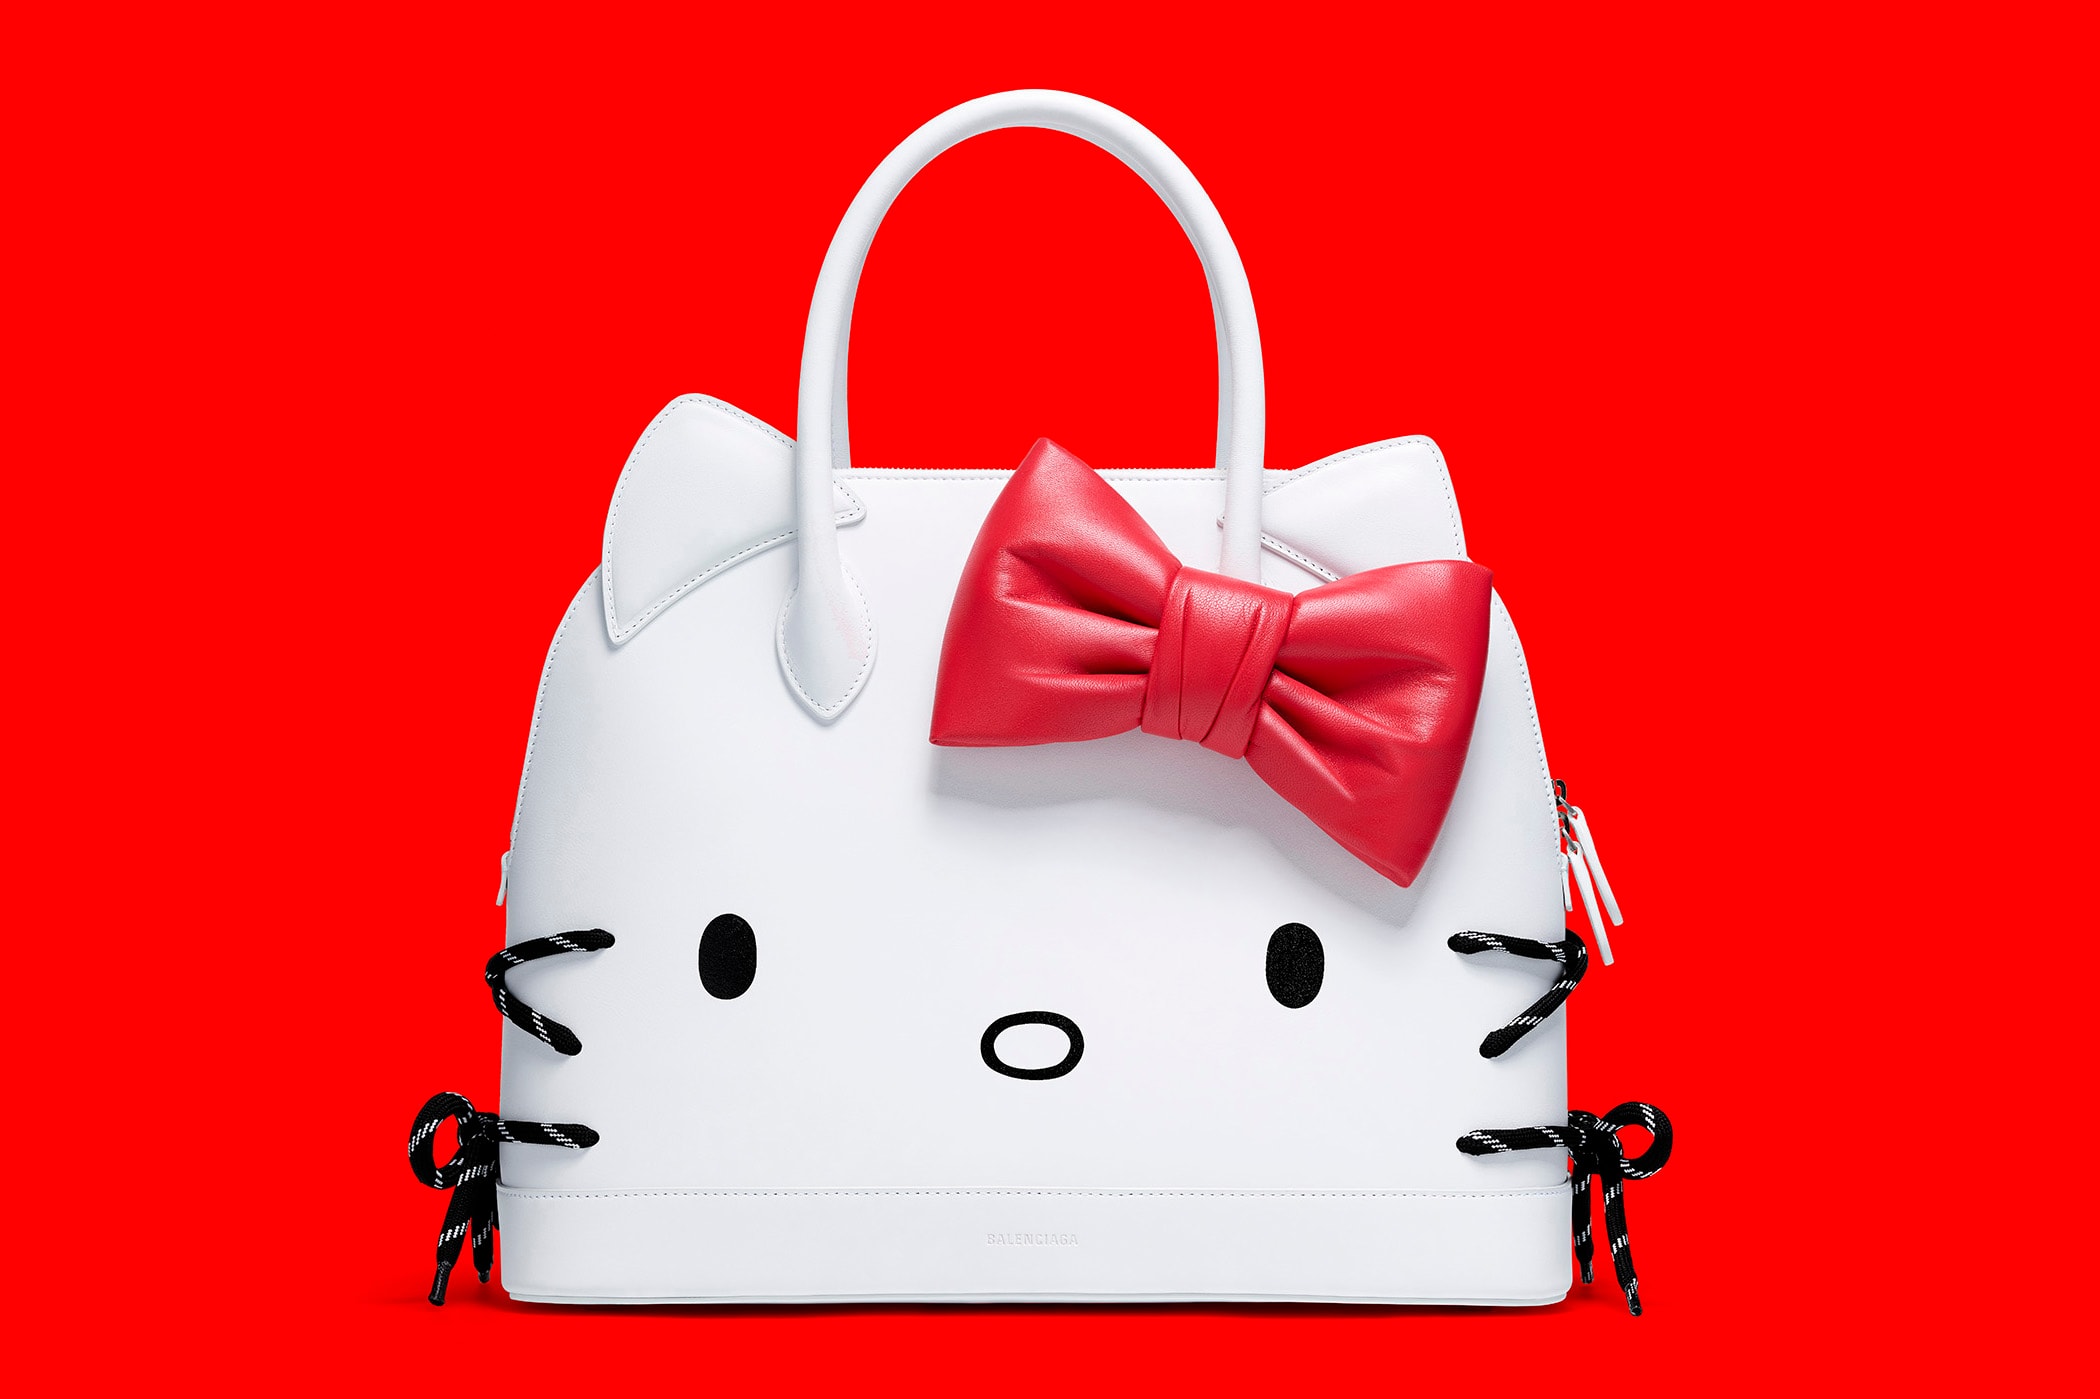 Balenciaga Hello Kitty Bag SS20 Release Date